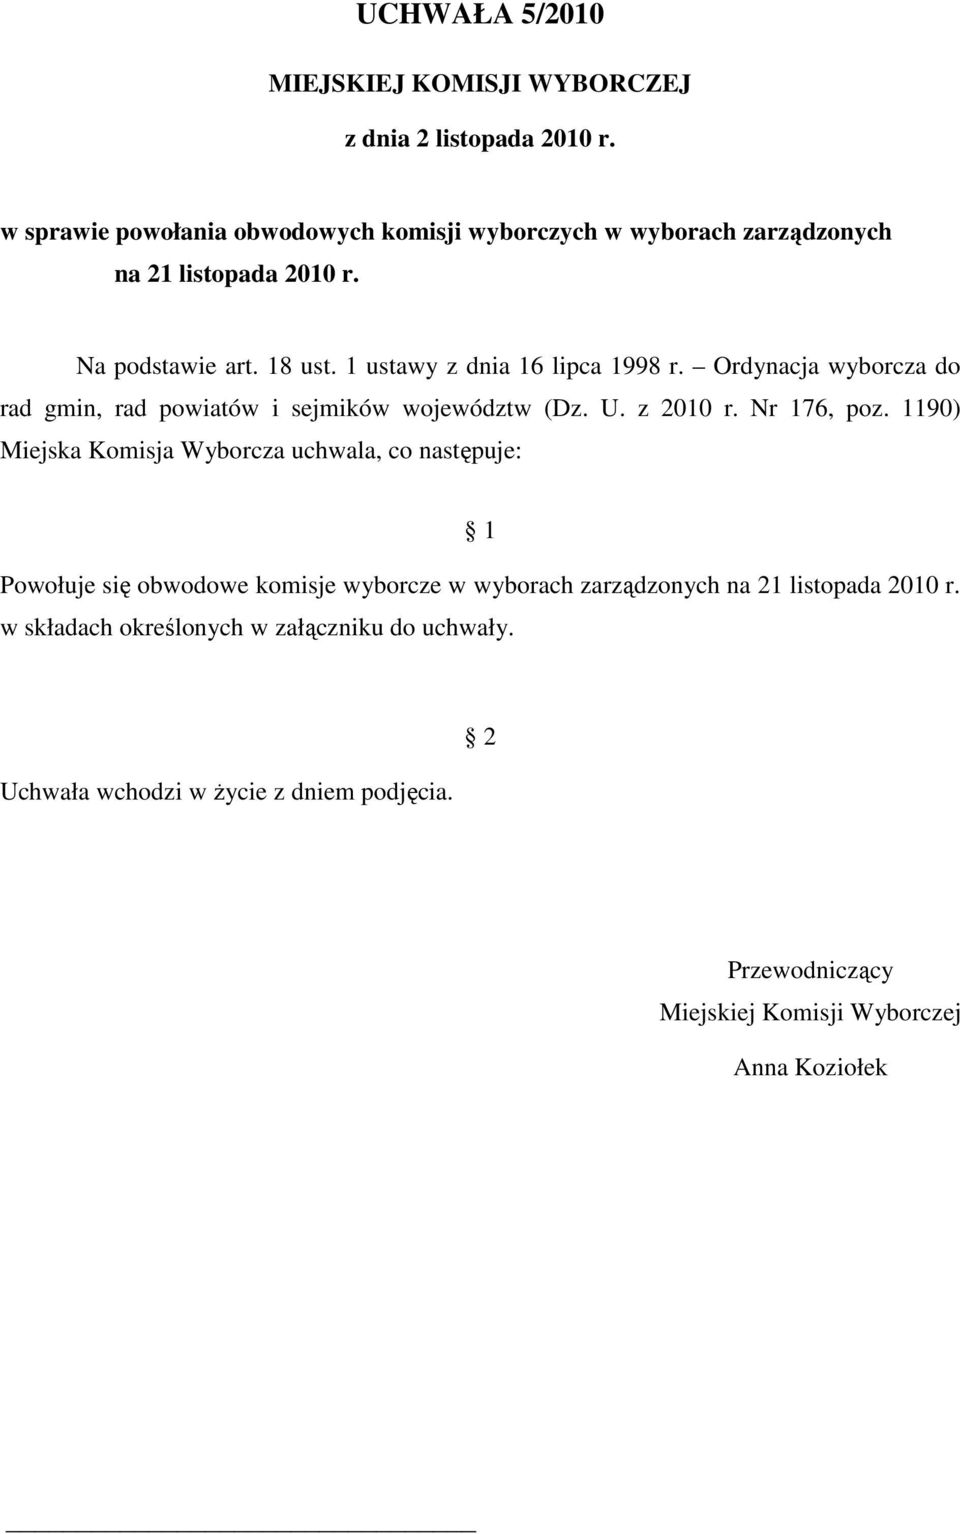 1 ustawy z dnia 16 lipca 1998 r. Ordynacja wyborcza do rad gmin, rad powiatów i sejmików województw (Dz. U. z 2010 r. Nr 176, poz.